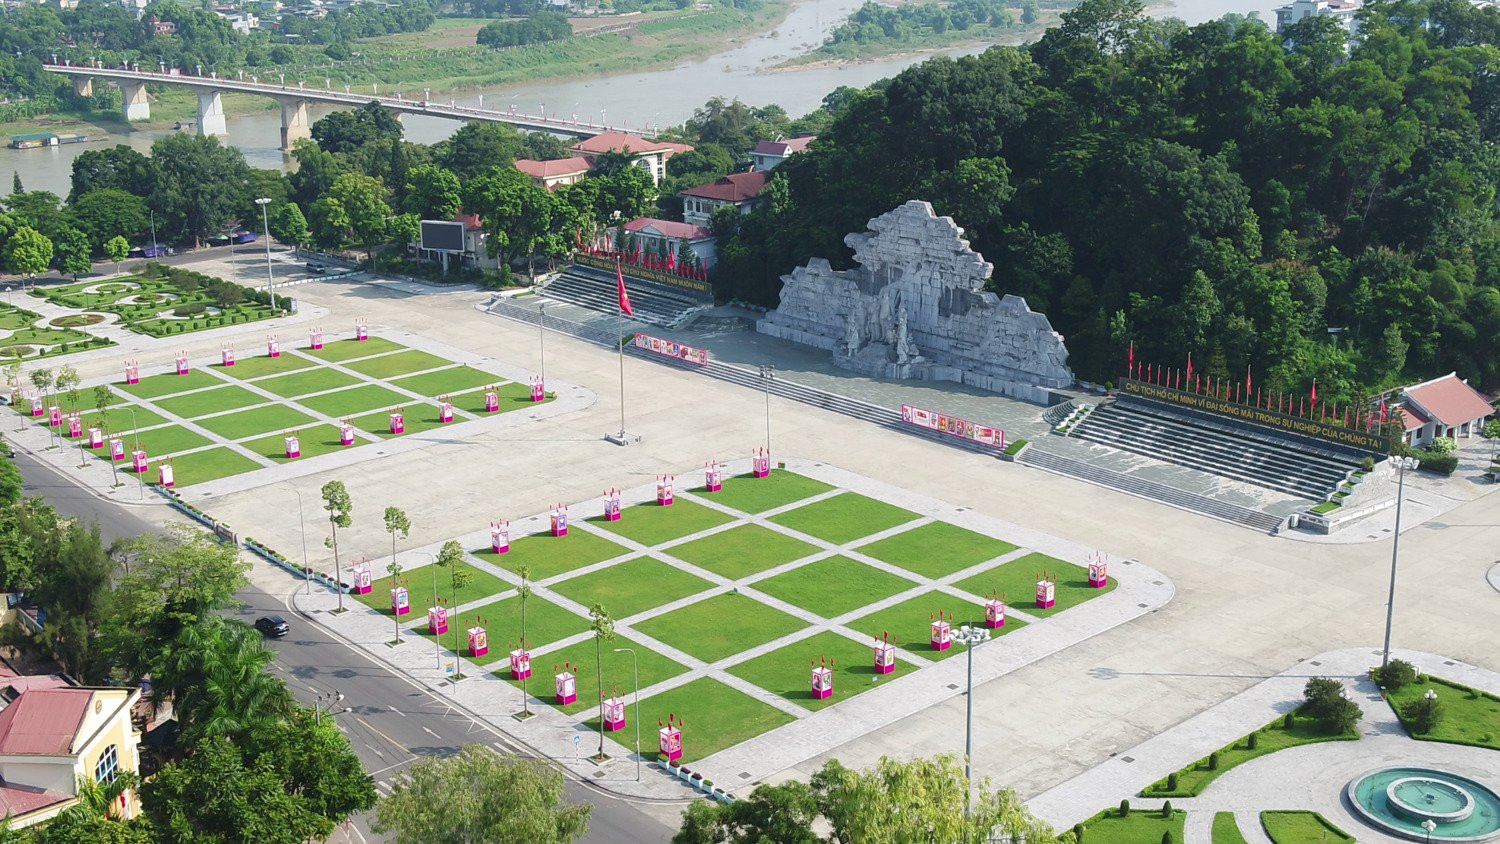 Quảng trường Nguyễn Tất Thành nhìn từ trên cao. Ảnh: Sở Ngoại vụ tỉnh Tuyên Quang